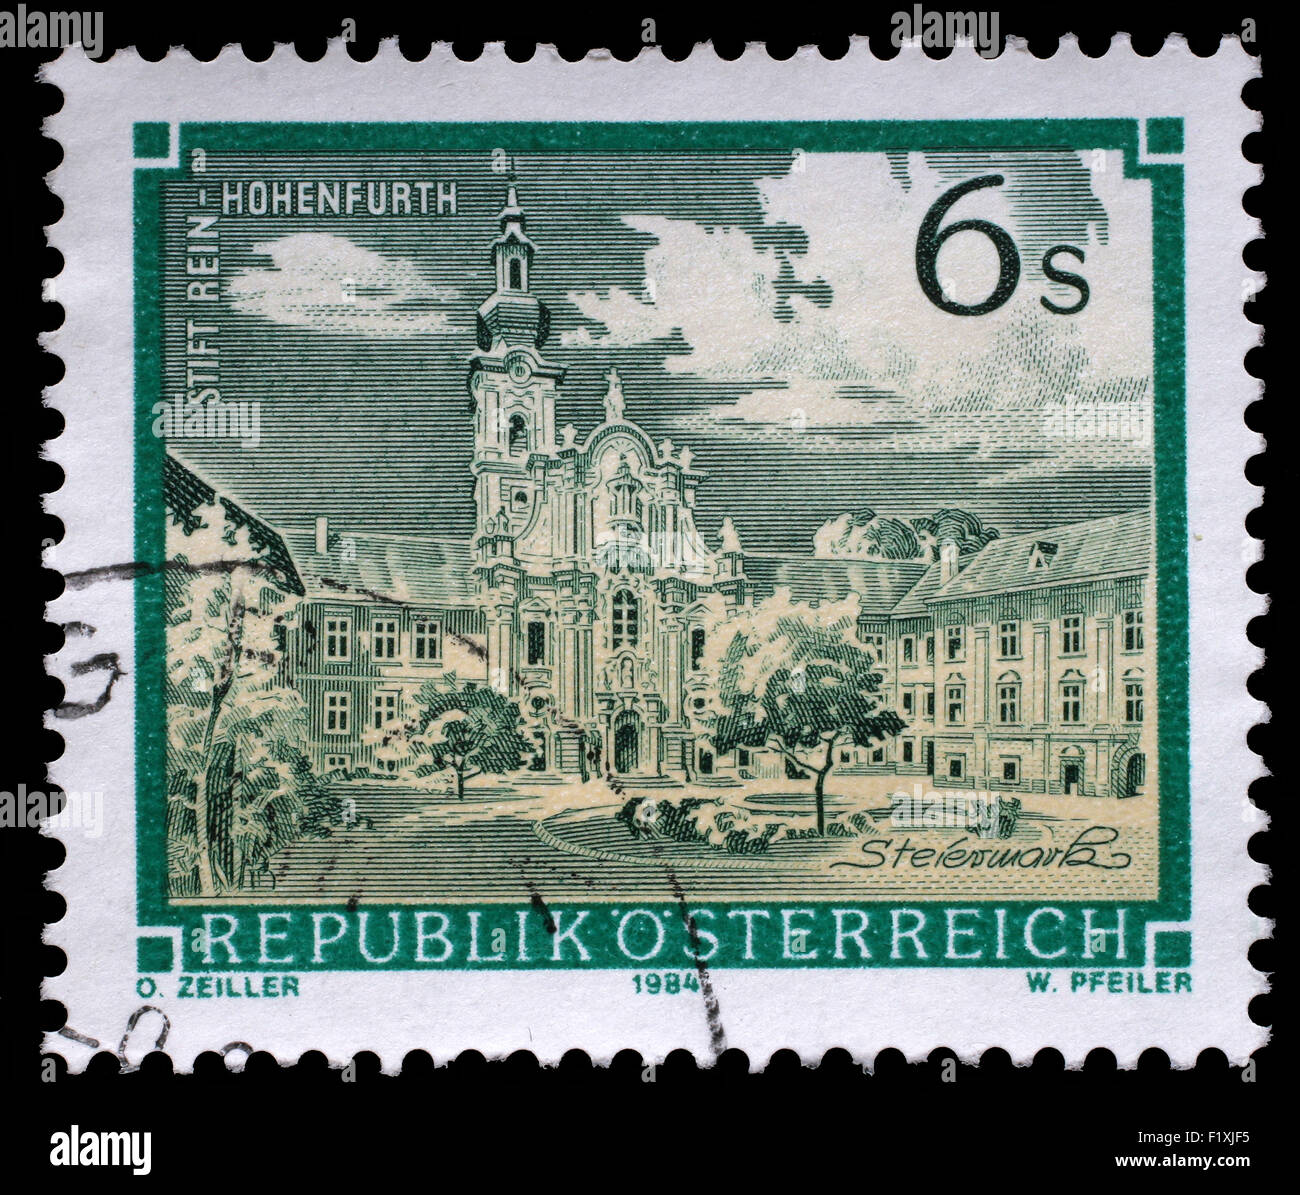 Timbres en l'Autriche montre Rein Abbaye, monastère cistercien, Hohenfurth, Styrie, vers 1984 Banque D'Images